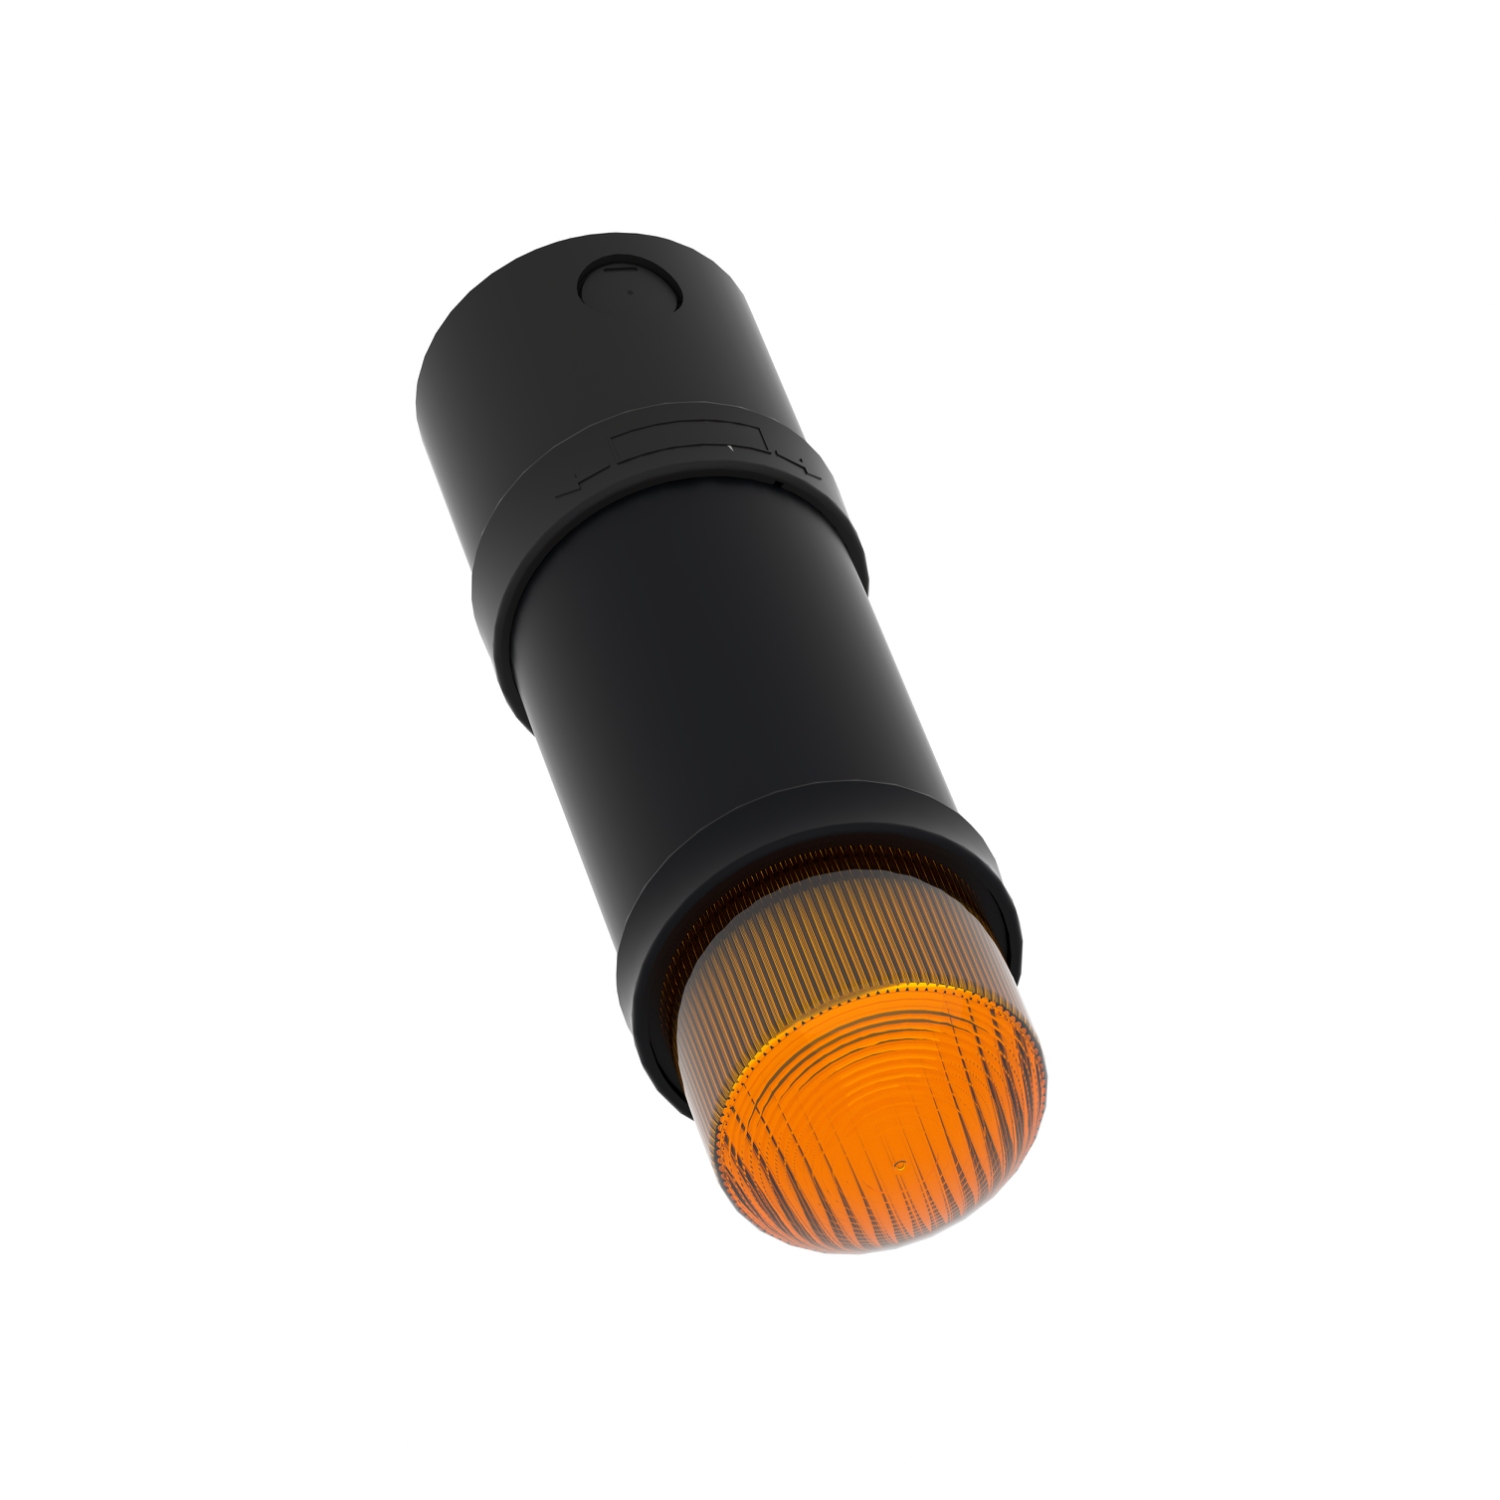 XVBC5B5 Schneider E. Leuchtelement LED Blinklicht orange 24VAC/DC 70mm -  Signalsäulenelement, optisch